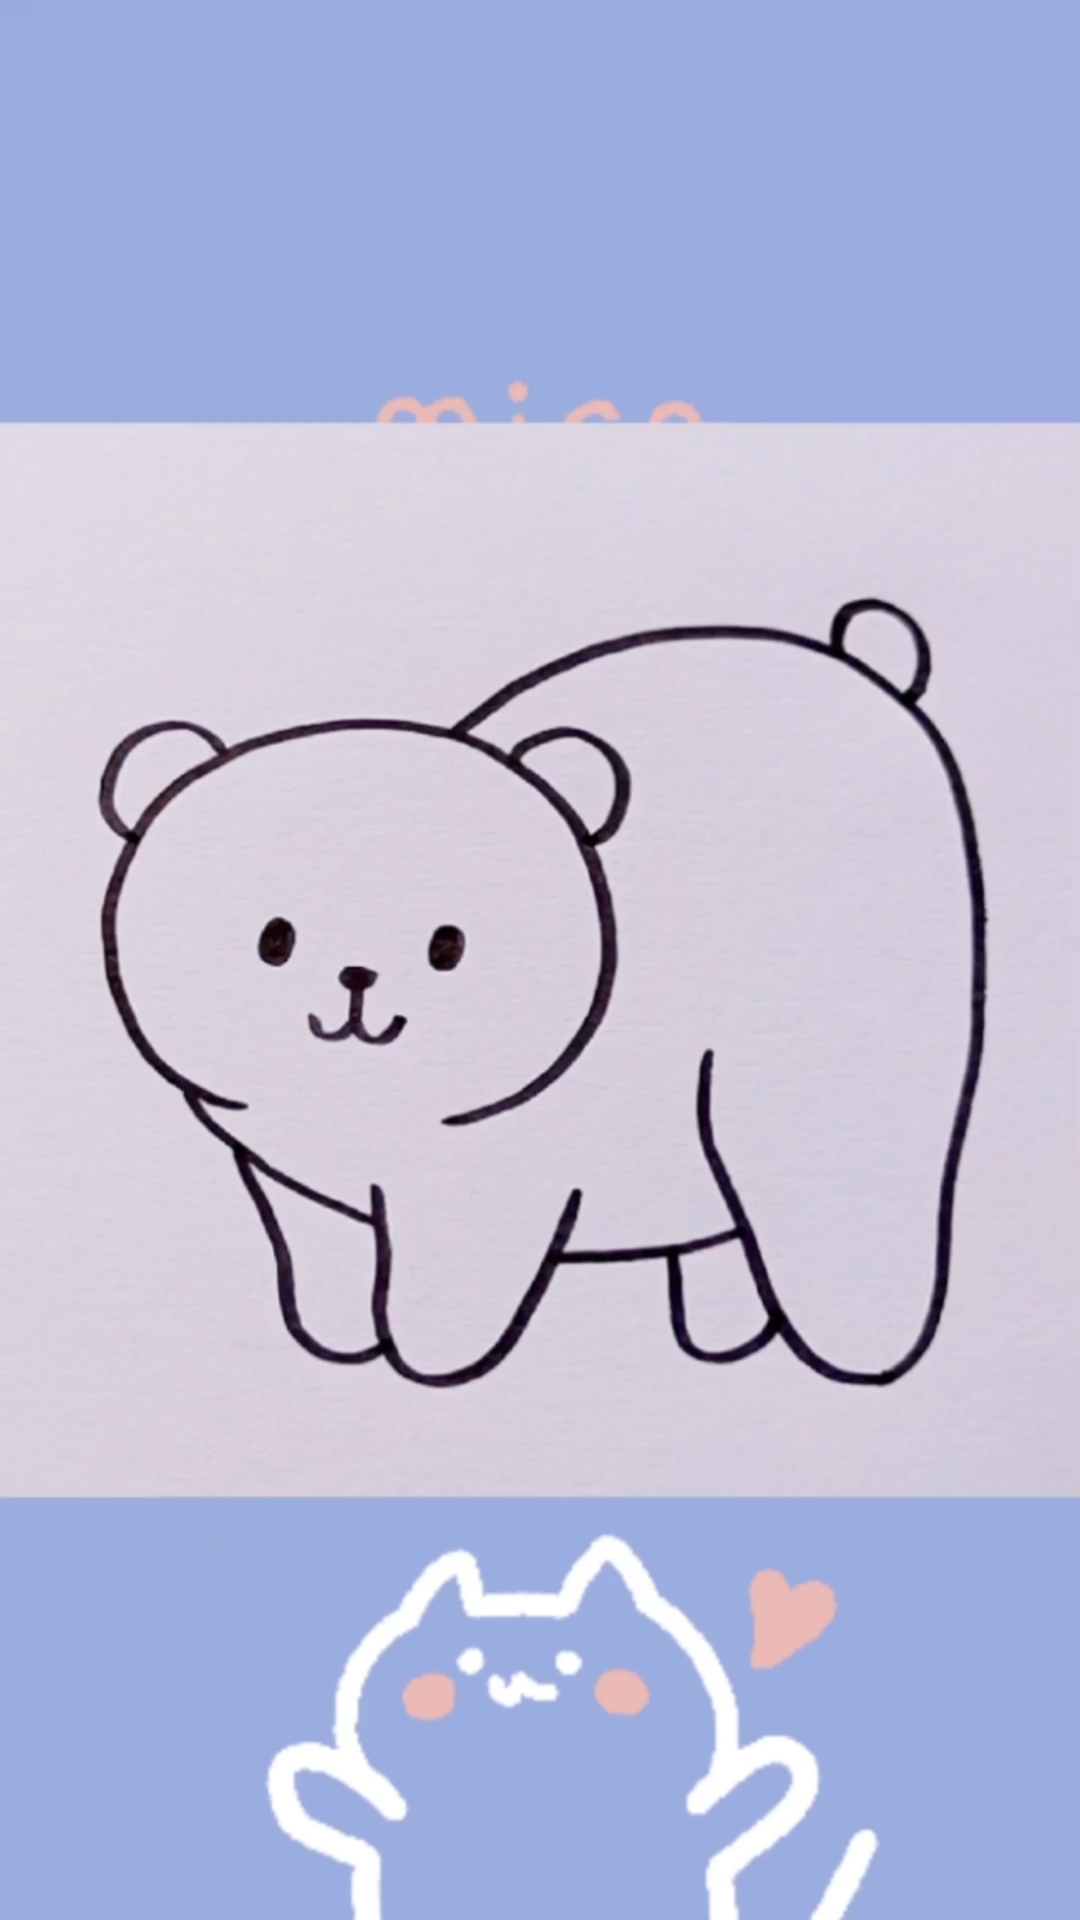 北极熊简笔画宝宝图片